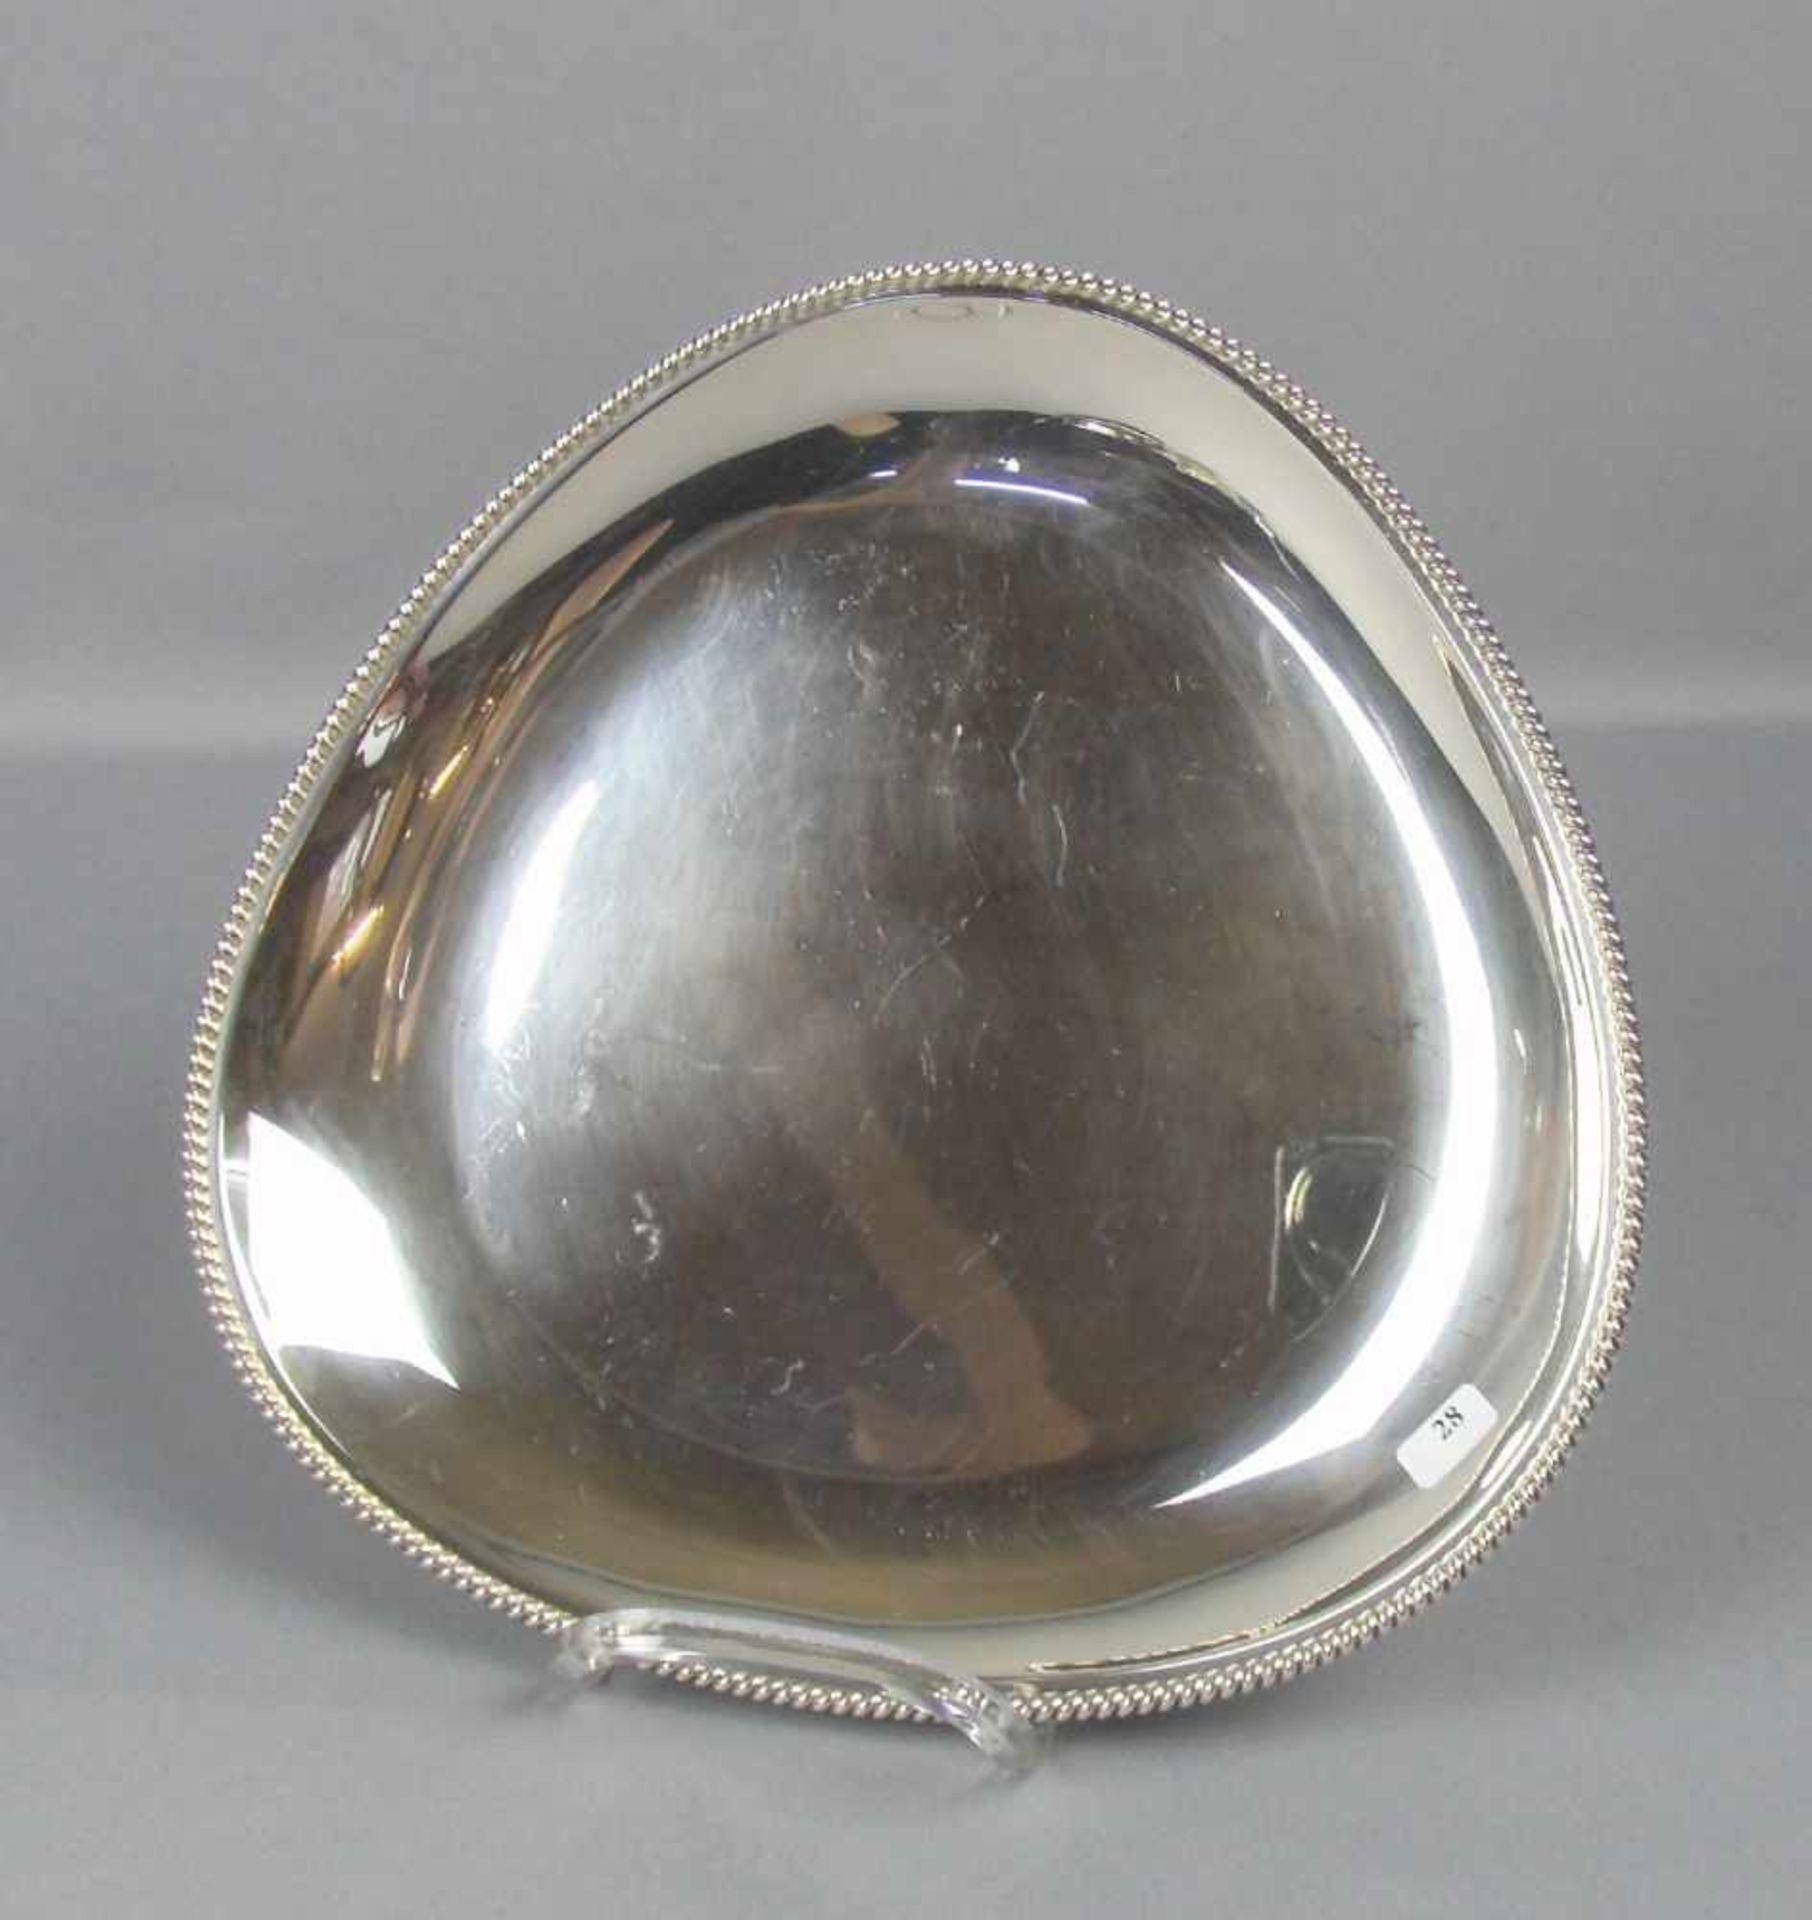 DREIPASSIGE SCHALE / silver plate, 835er Silber (376 g), deutsch, gepunzt mit Halbmond, Krone, - Bild 2 aus 5